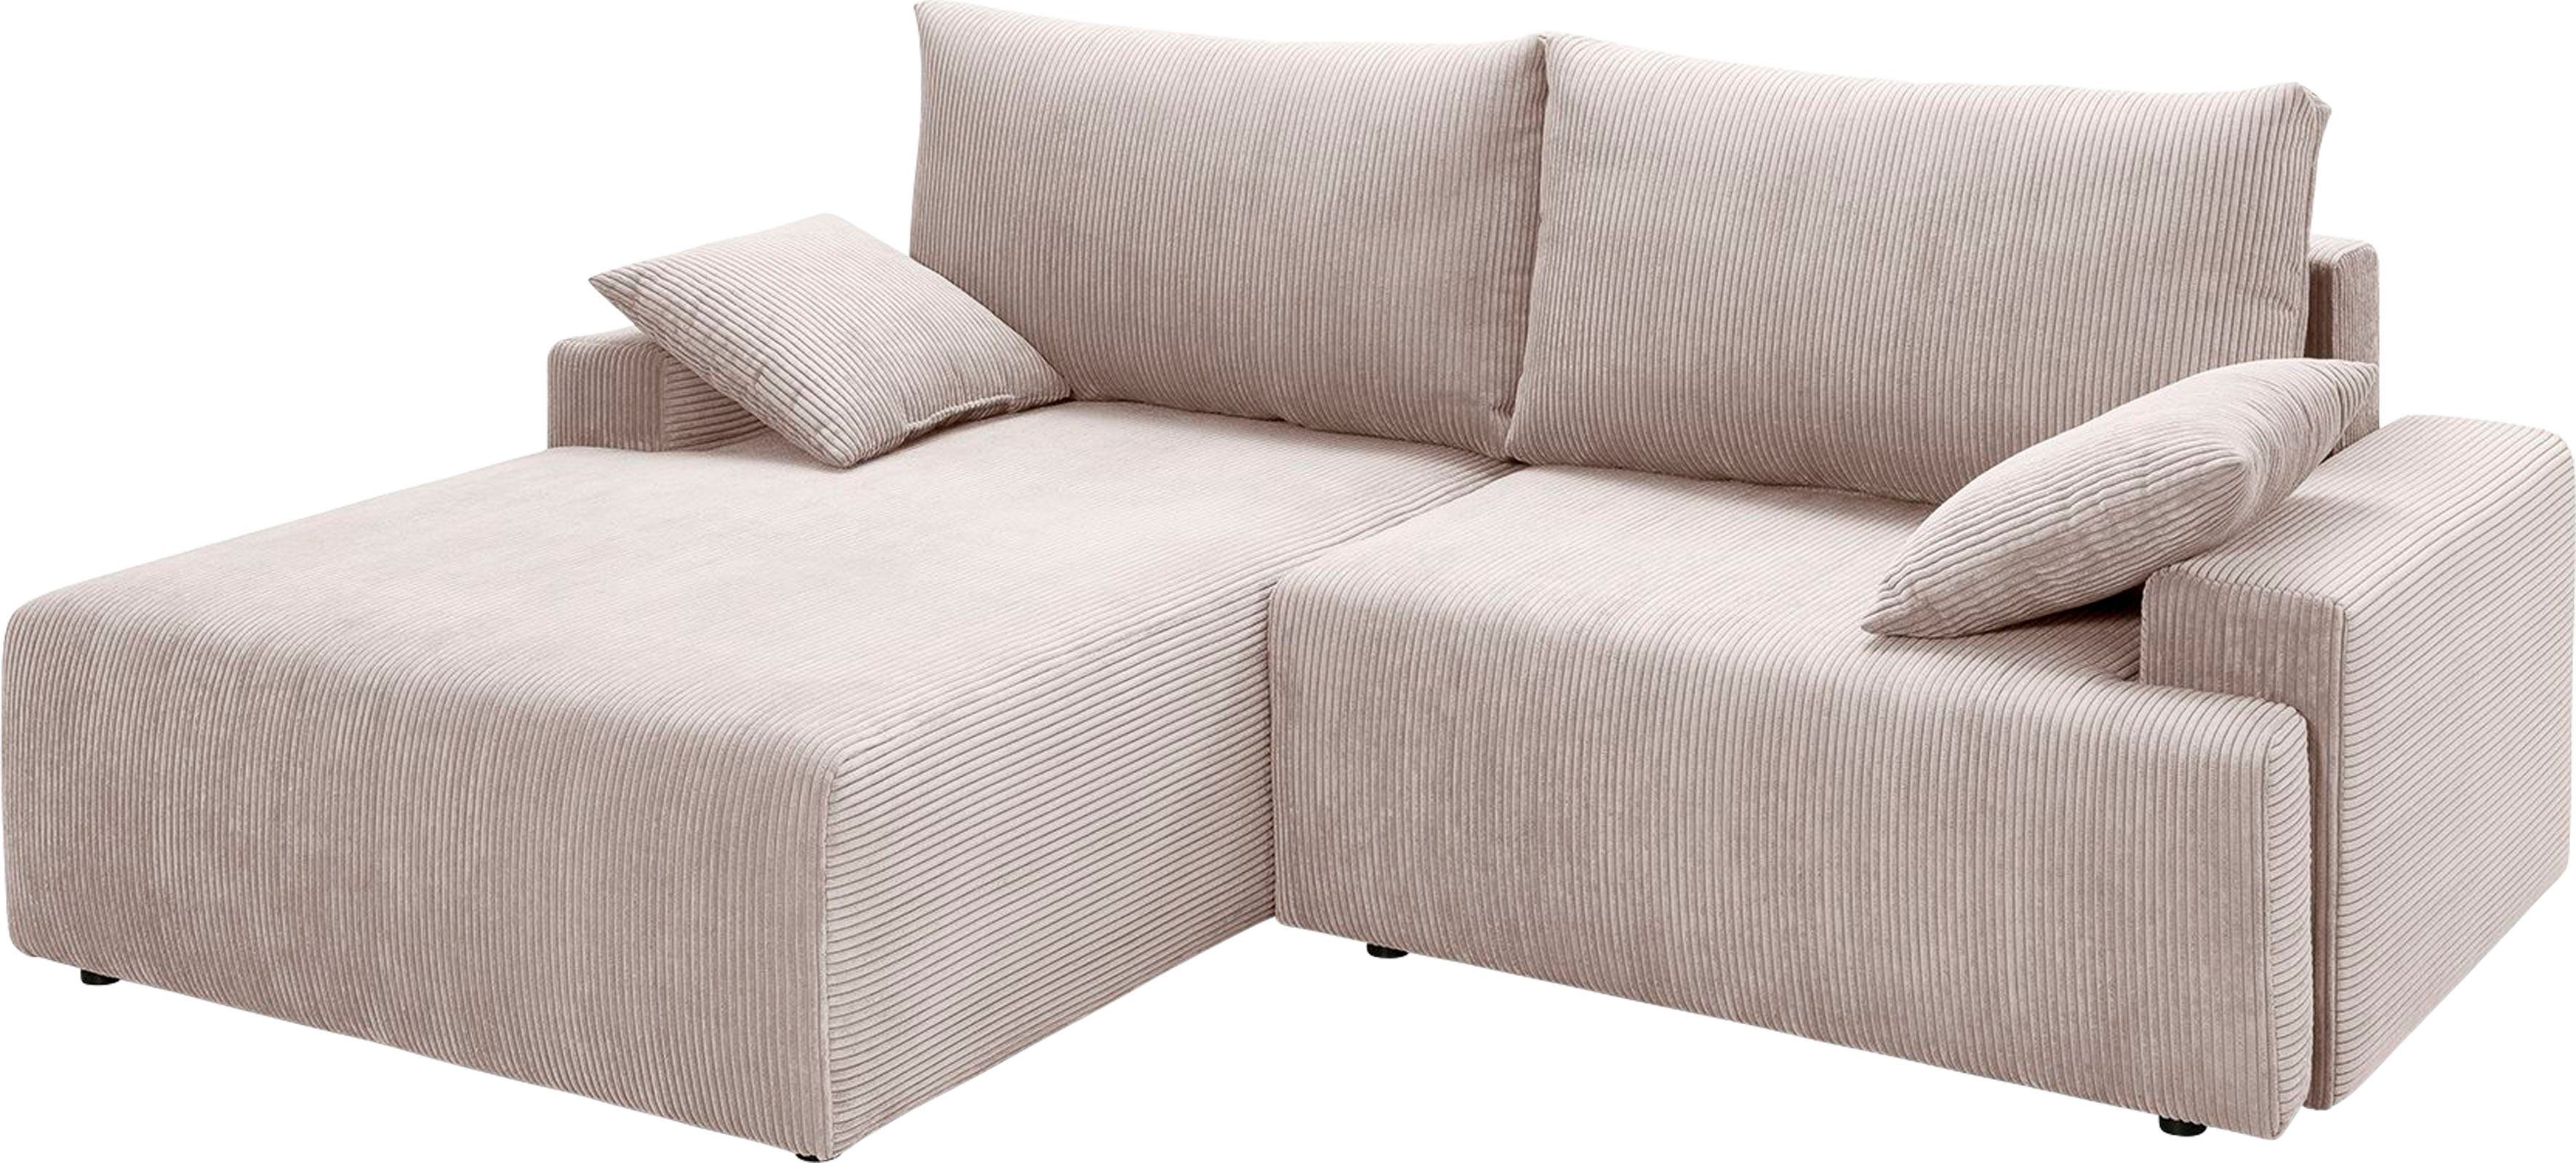 Ecksofa sofa inklusive Bettfunktion fashion exxpo in und Bettkasten Cord-Farben Orinoko, - verschiedenen